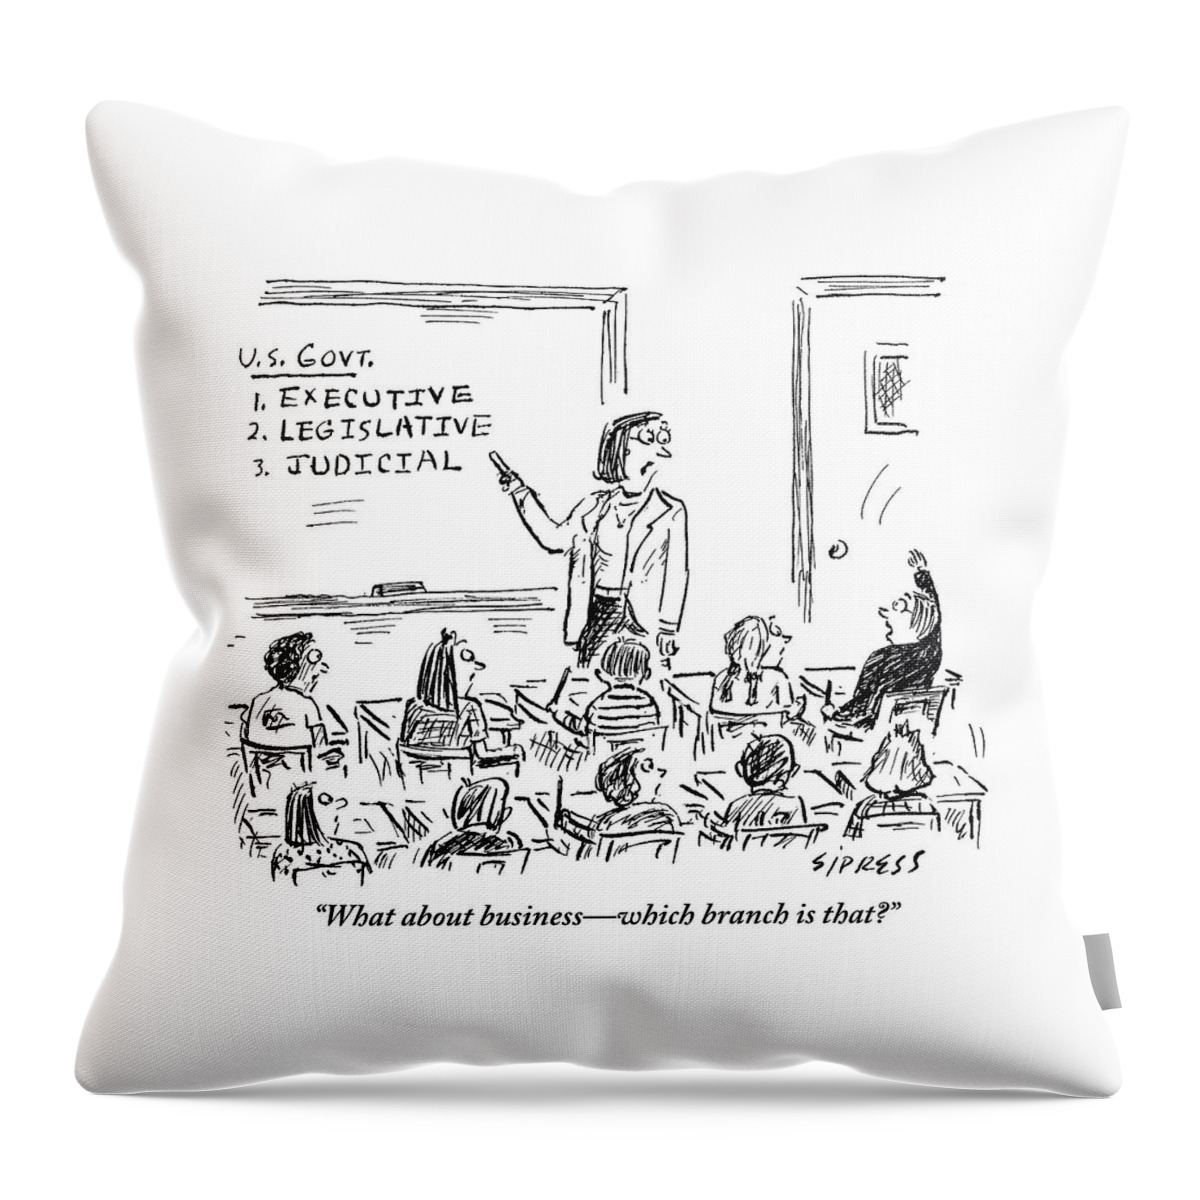 A Little Boy Asks His Teacher In The Classroom Throw Pillow